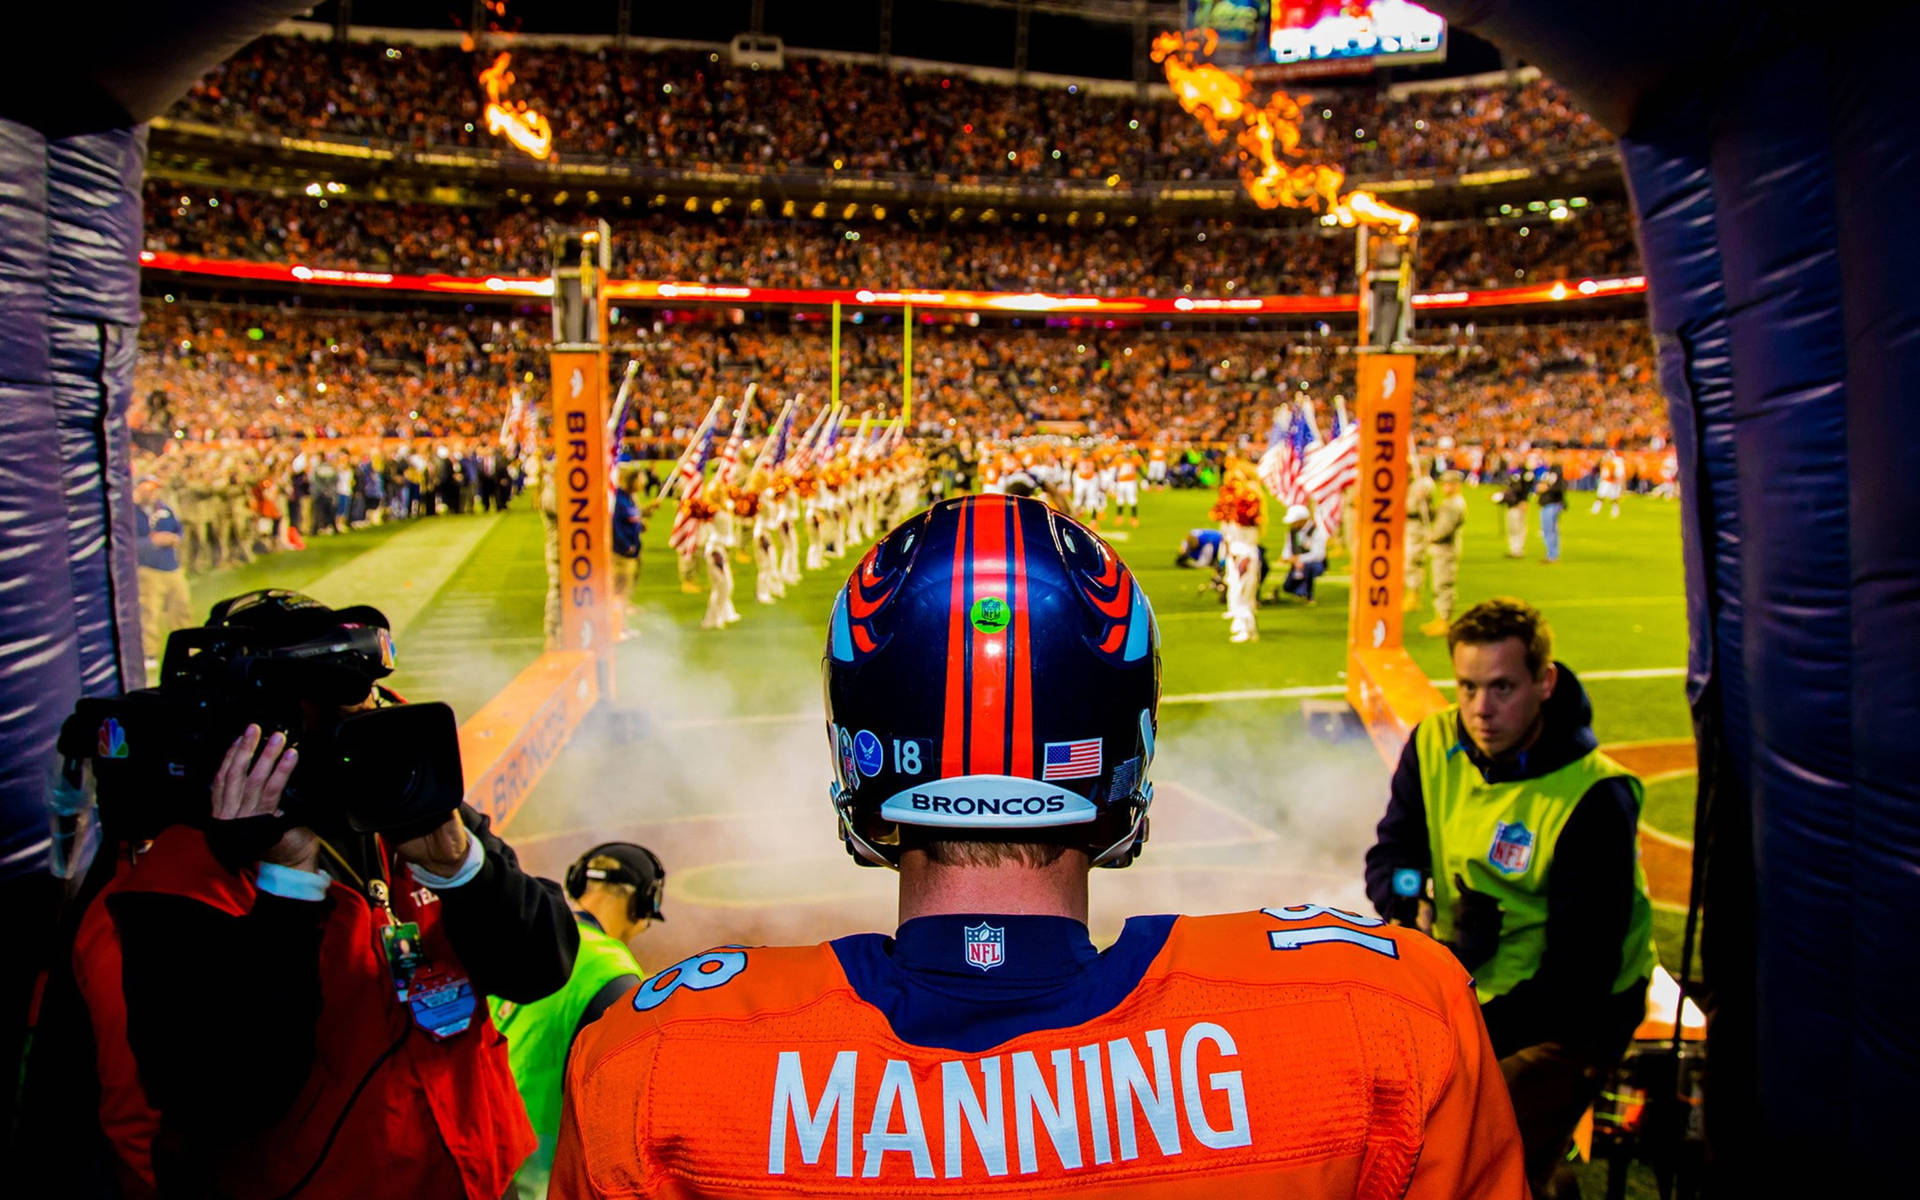 Broncos Manning Walking Into Stadium Wallpaper